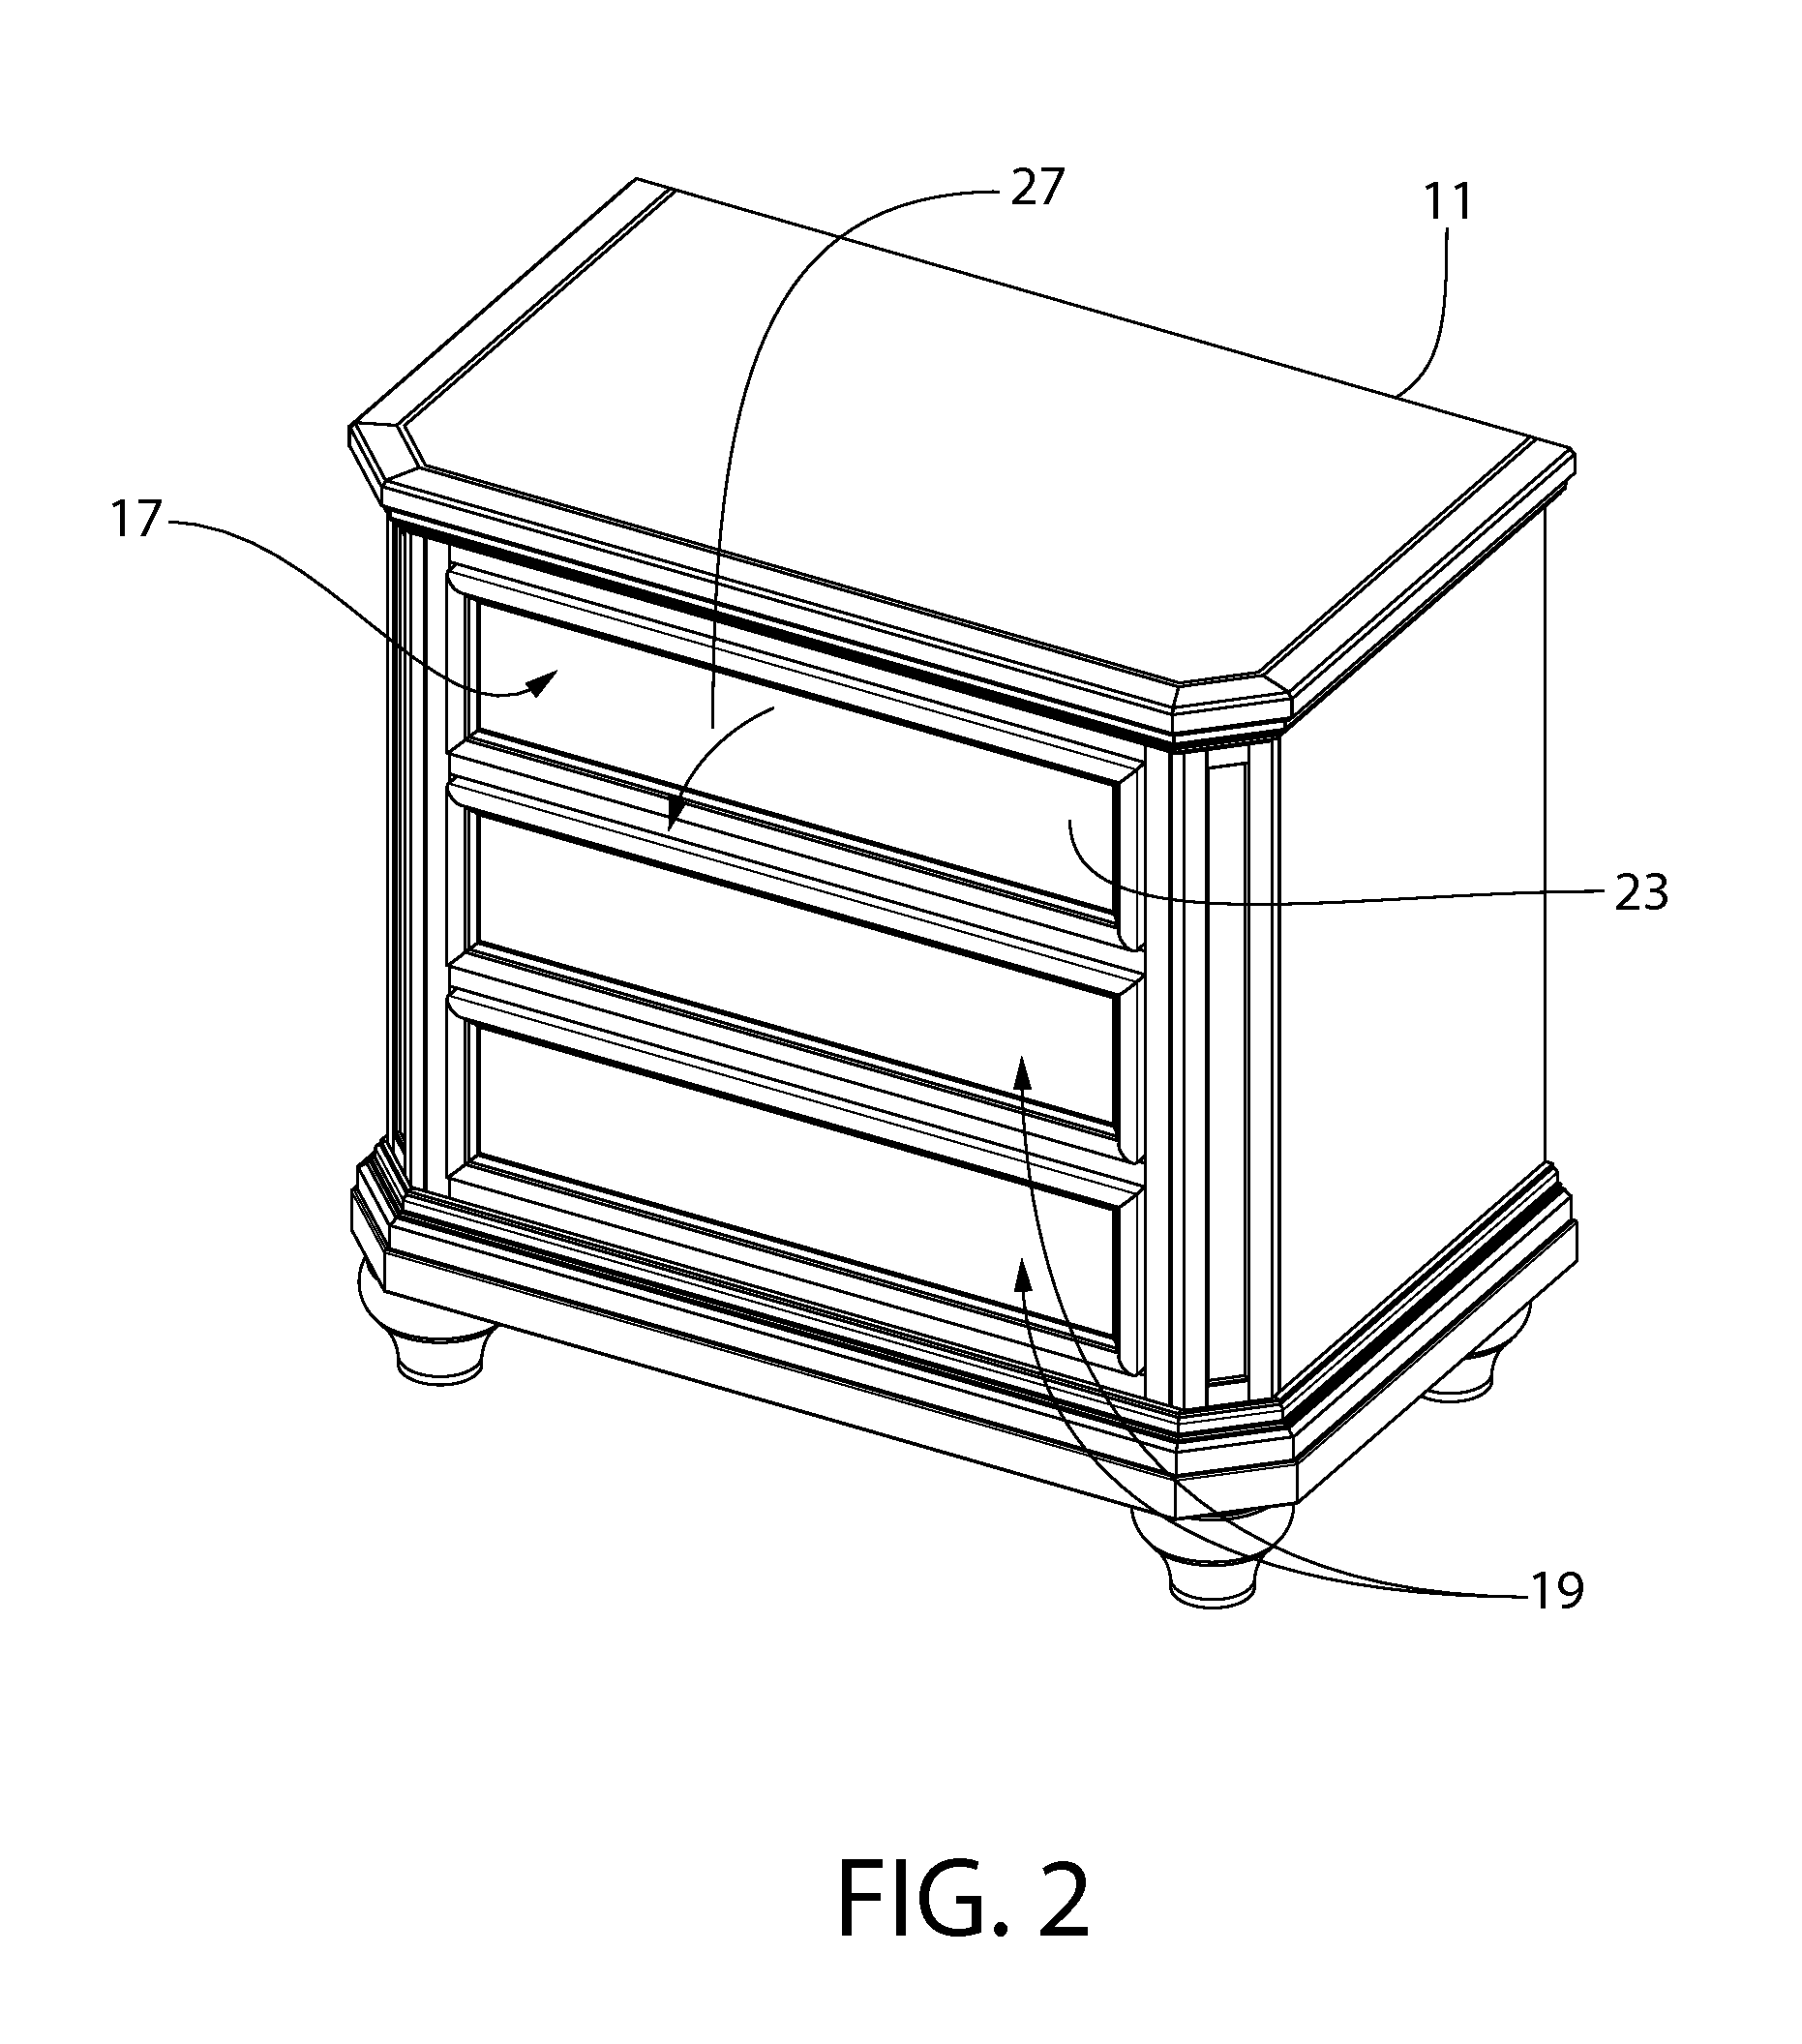 Tray table apparatus